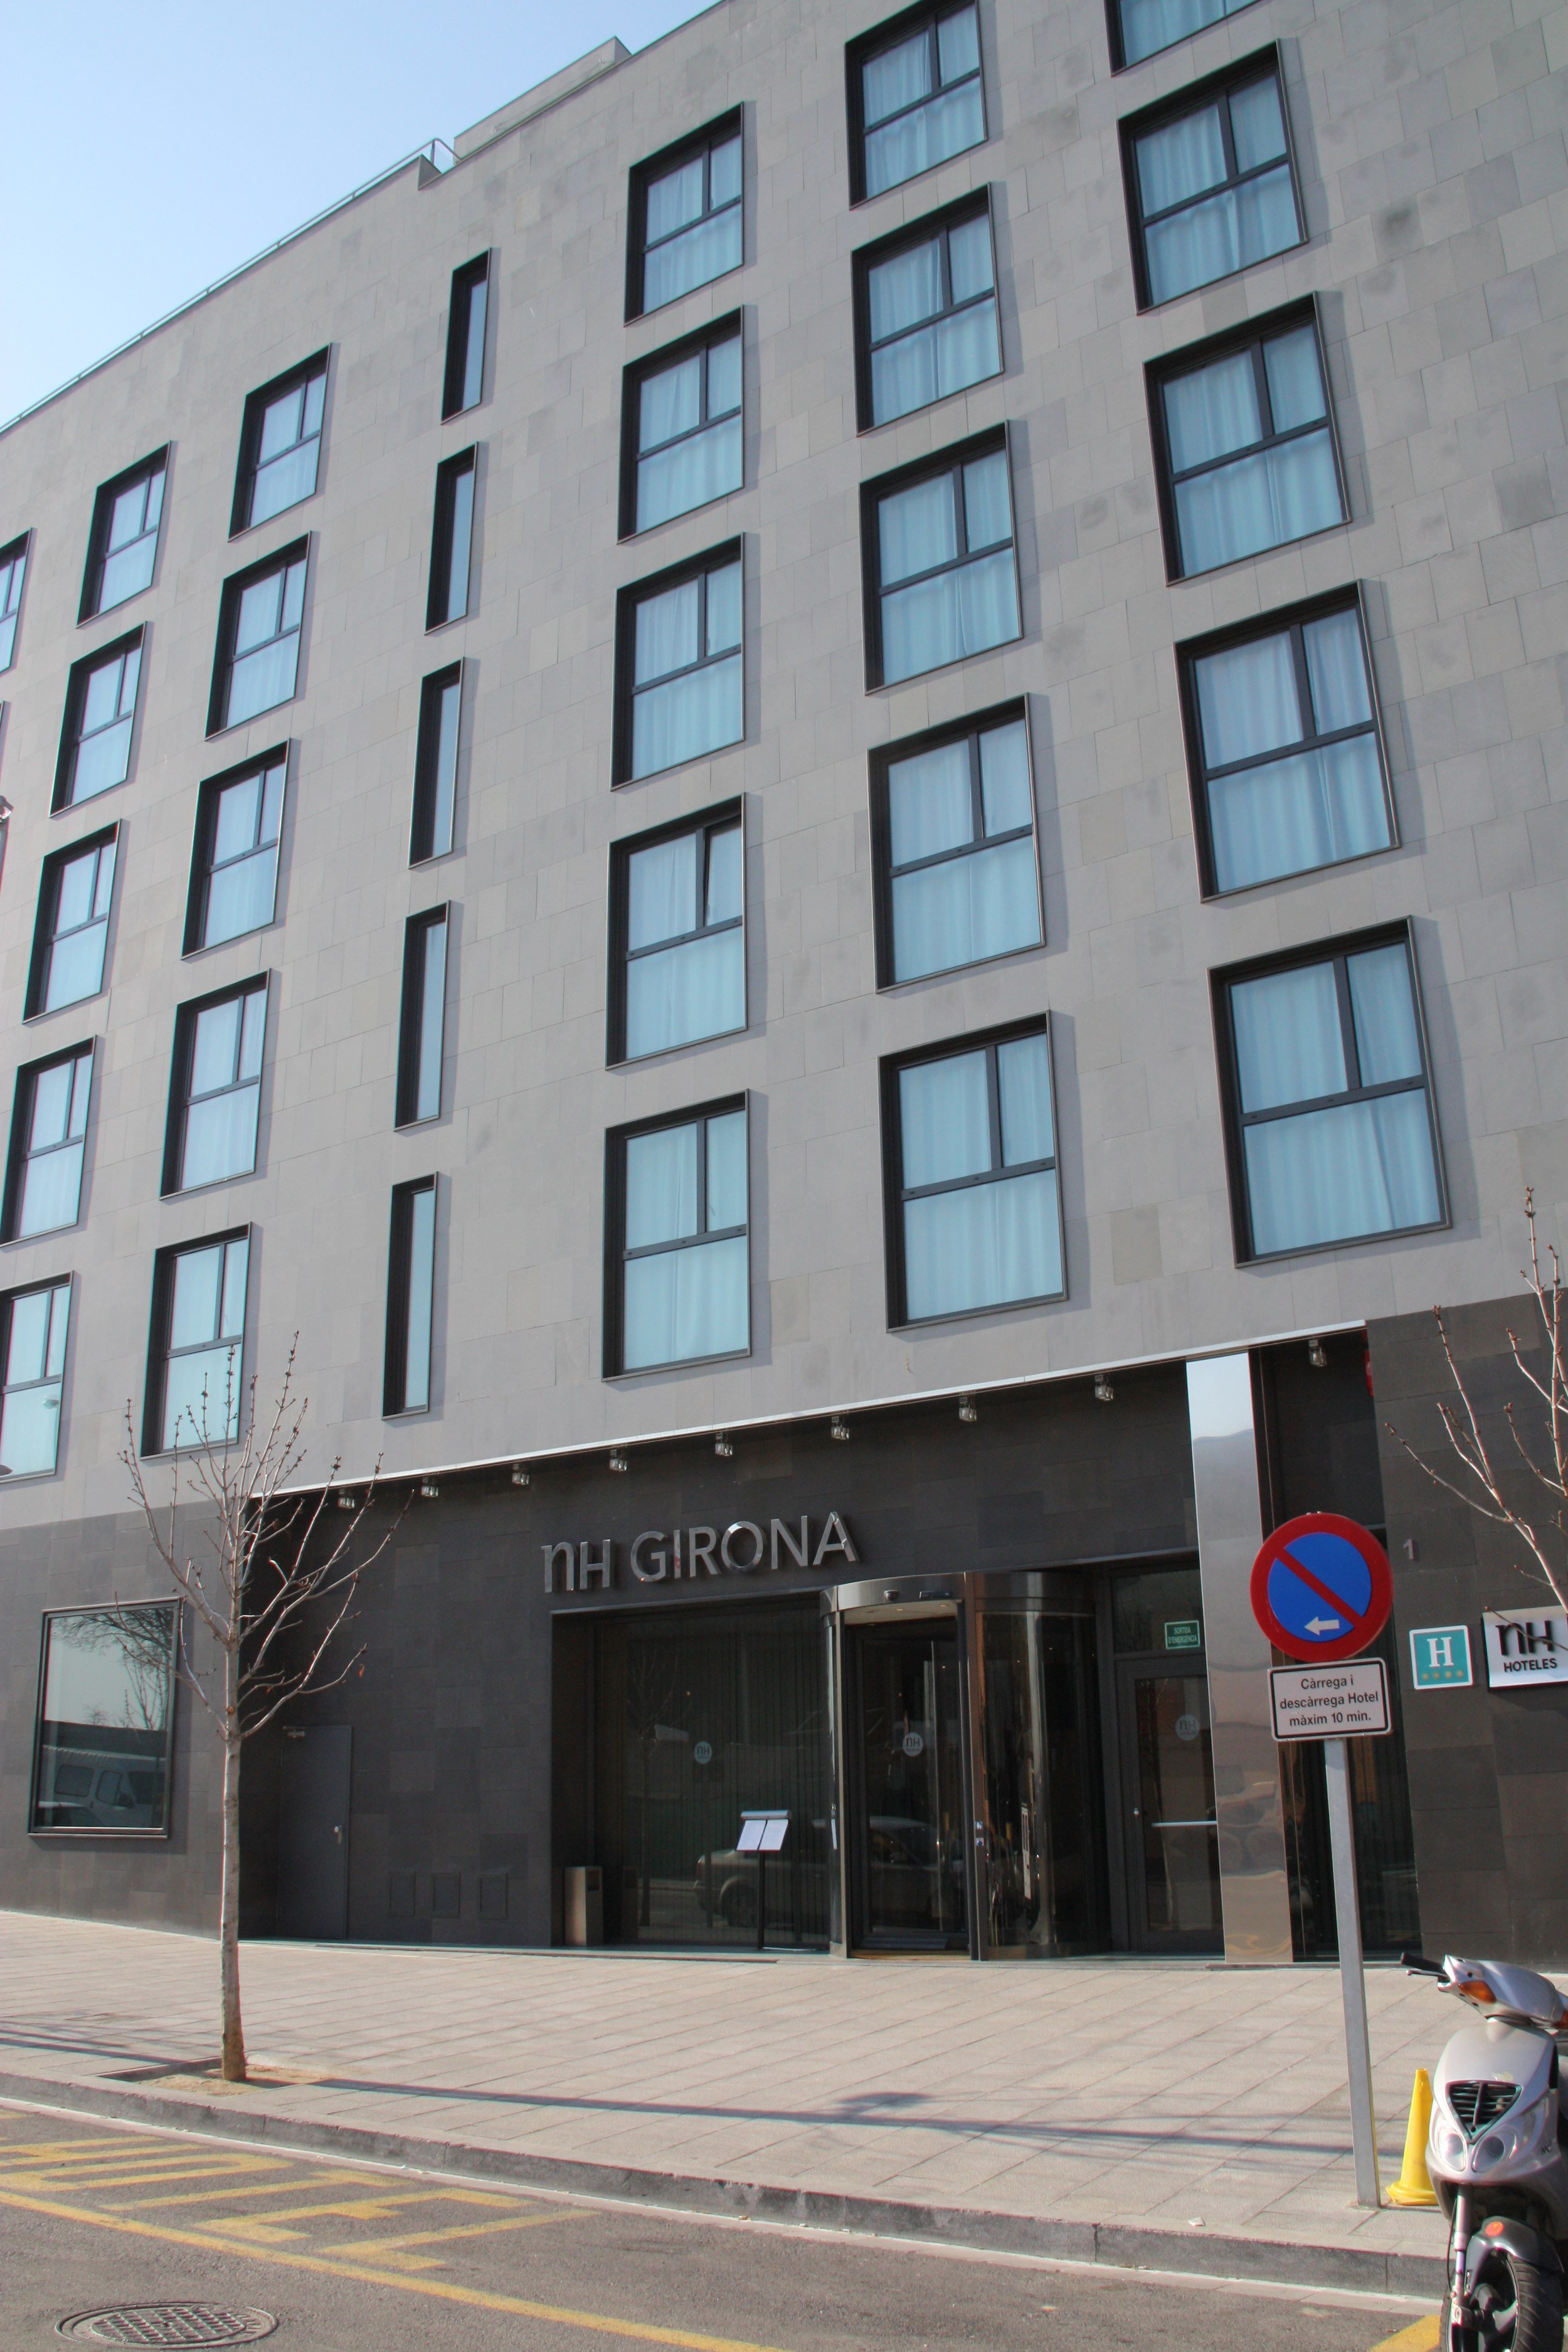 NH Hotel recibe una oferta de fusión por parte del Grup Barceló